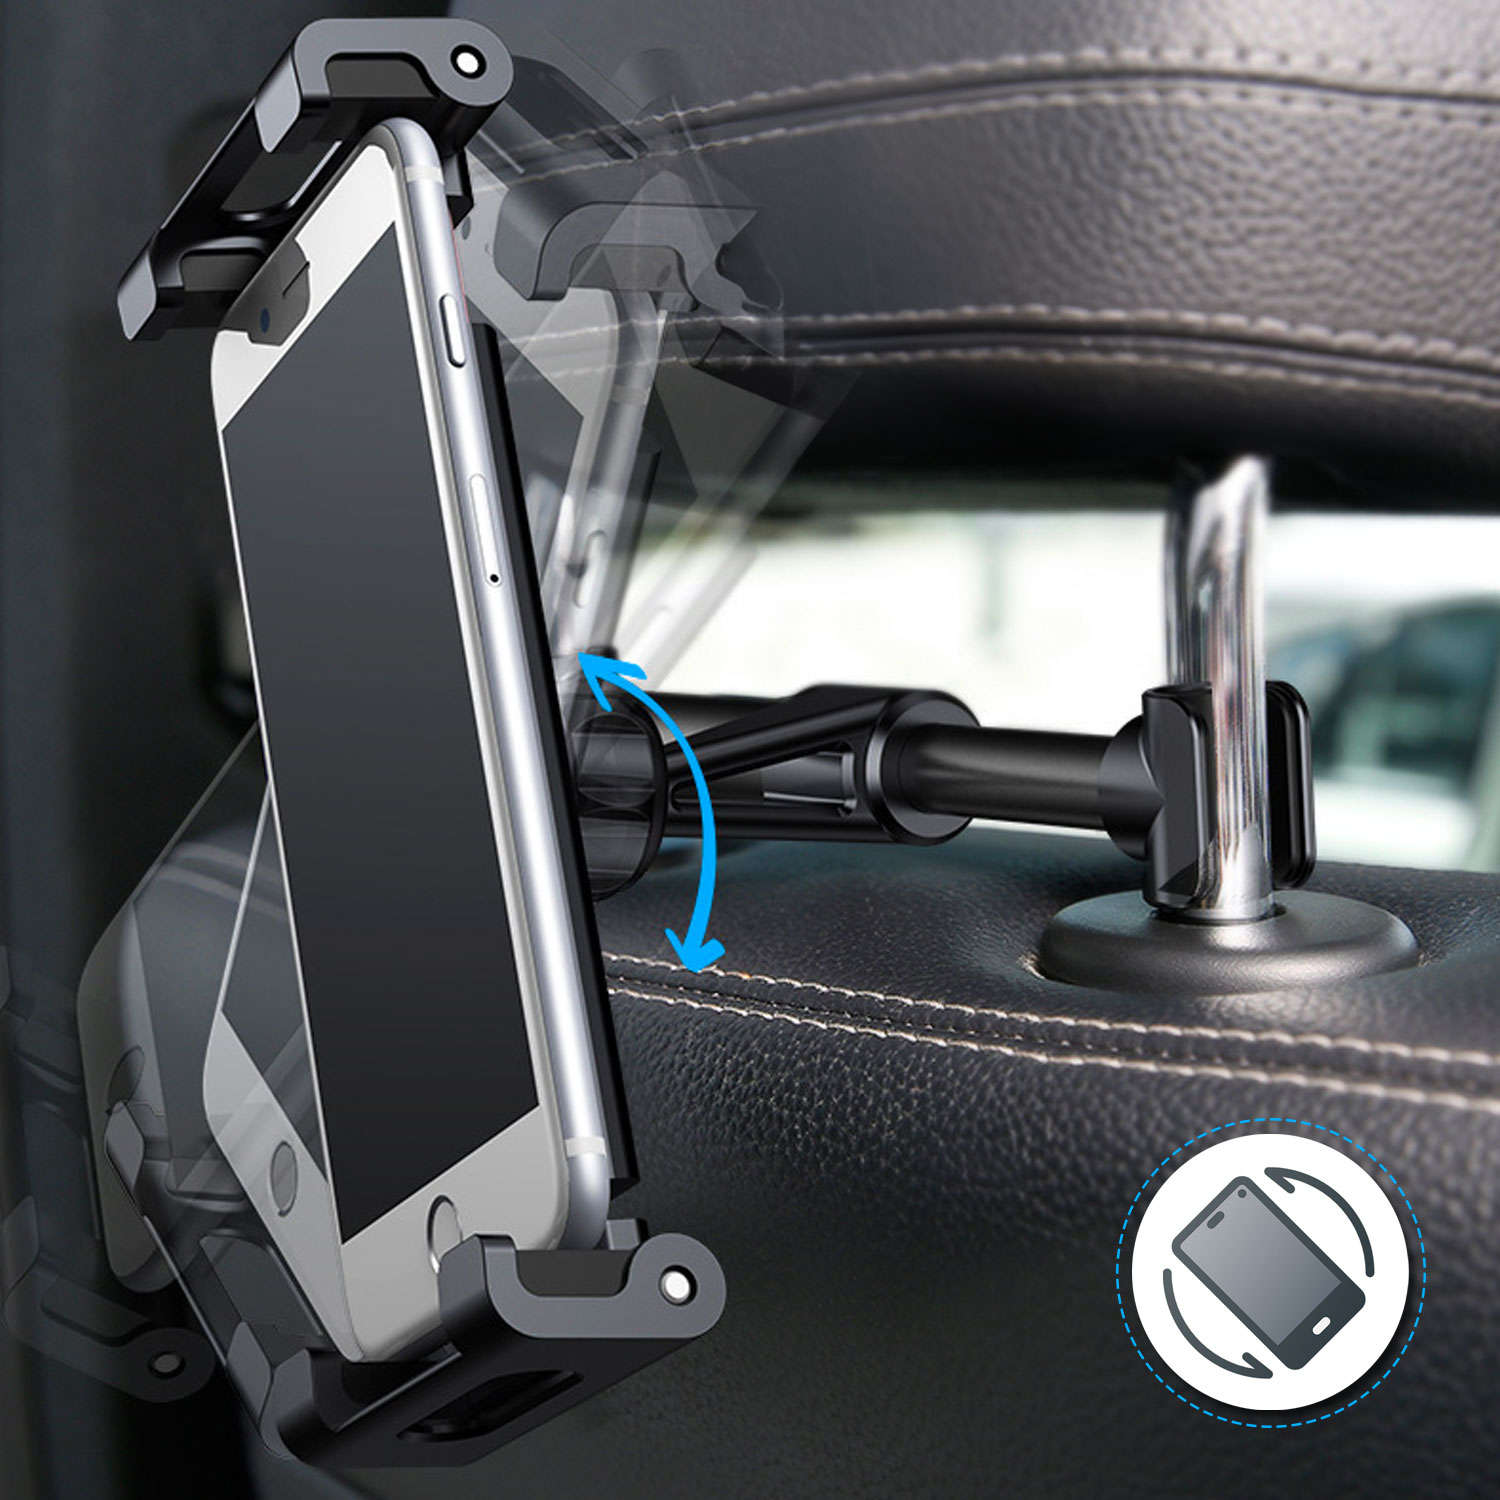 Autohalterung für Tablet-Telefon an der Kopfstütze des Autos